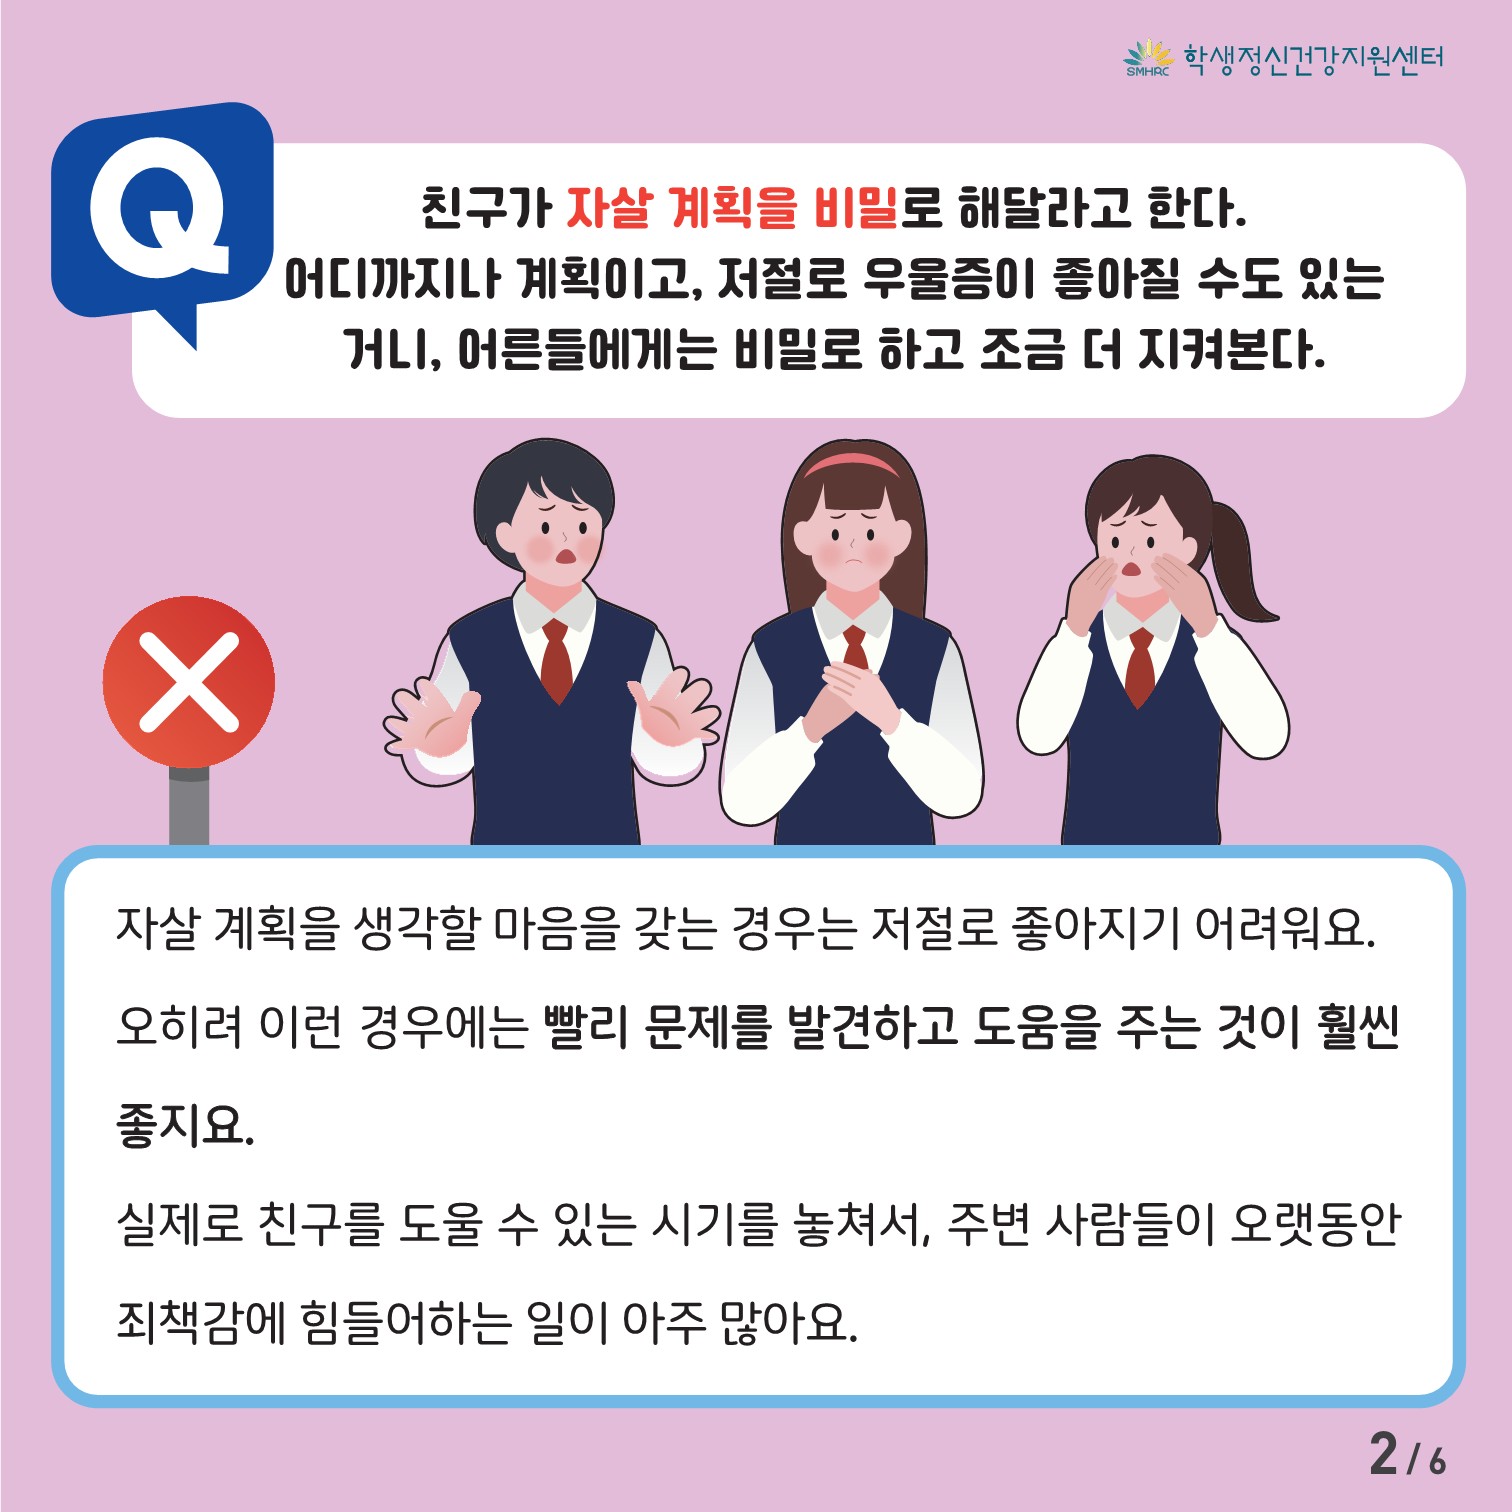 [중고등학생용] 카드뉴스 제 2023 - 10호(집중력)_2